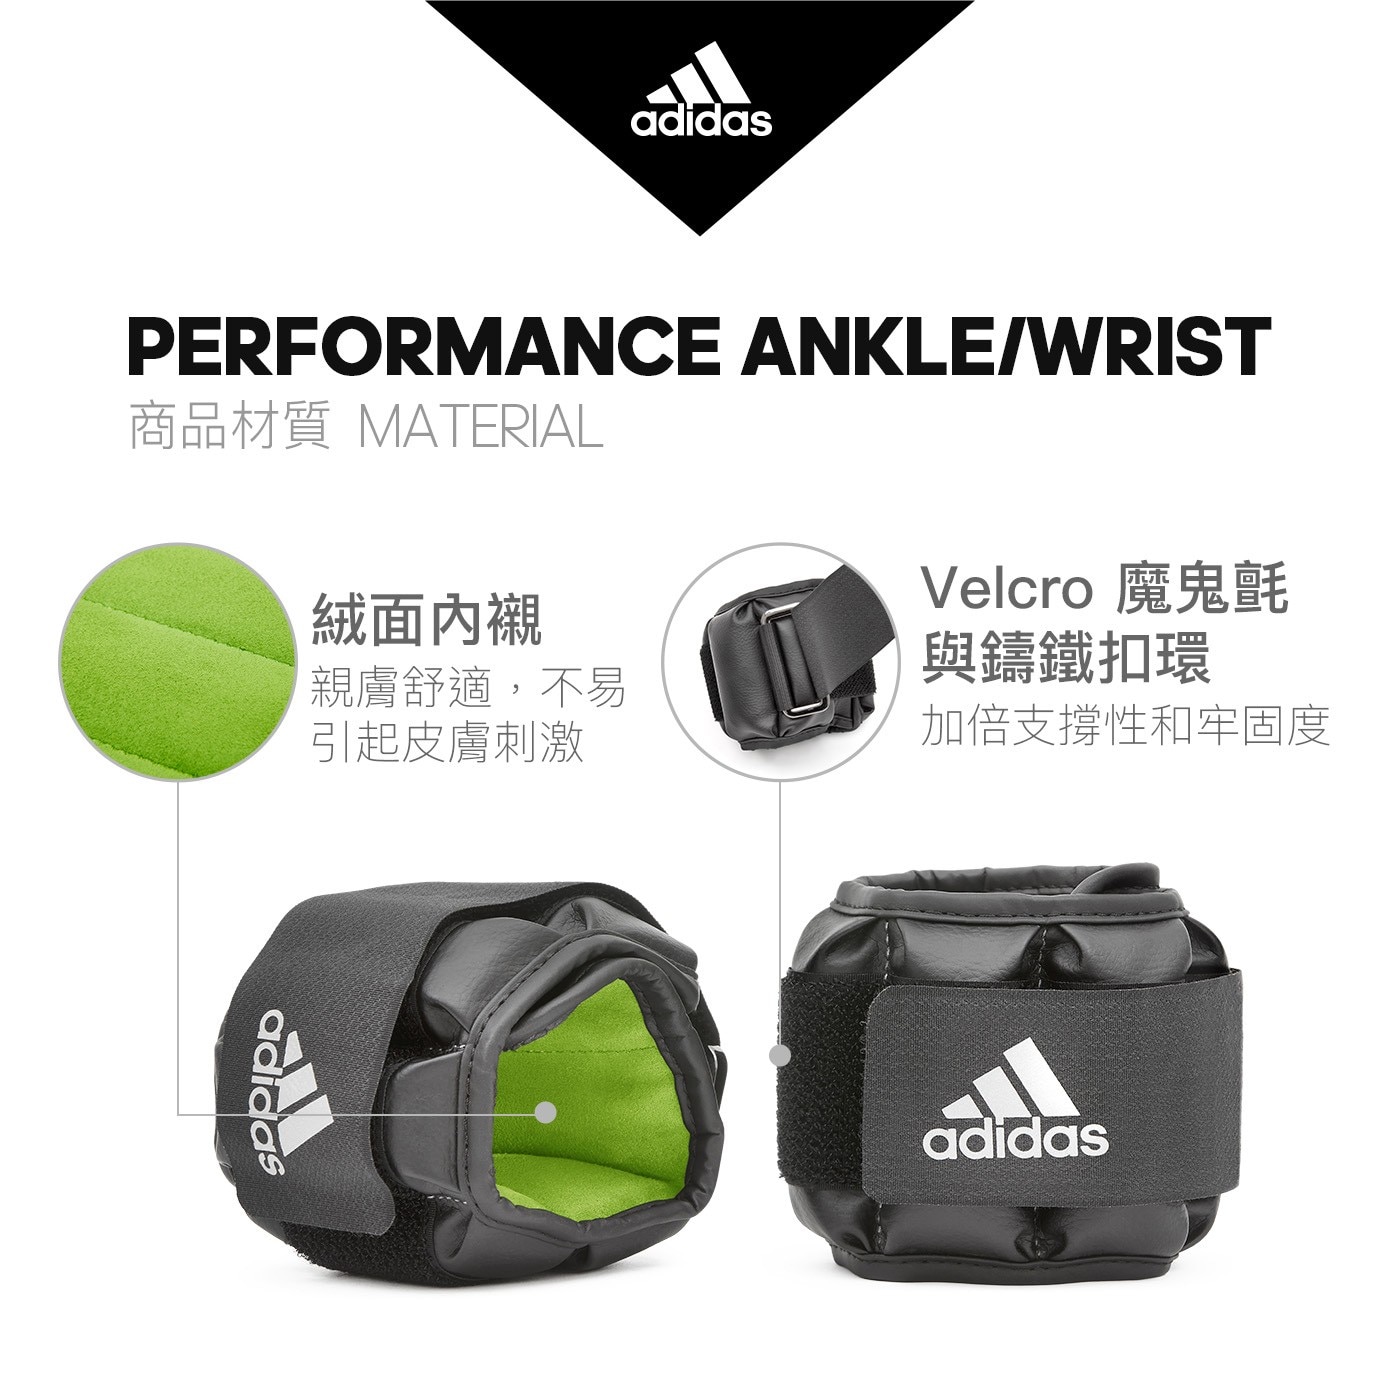 Adidas 可調式負重護腕/護踝 2公斤 X 2入有氧重訓皆適用提升運動強度與增加刺激肌肉效果日常有氧慢跑健身球類運動使用都可以配戴